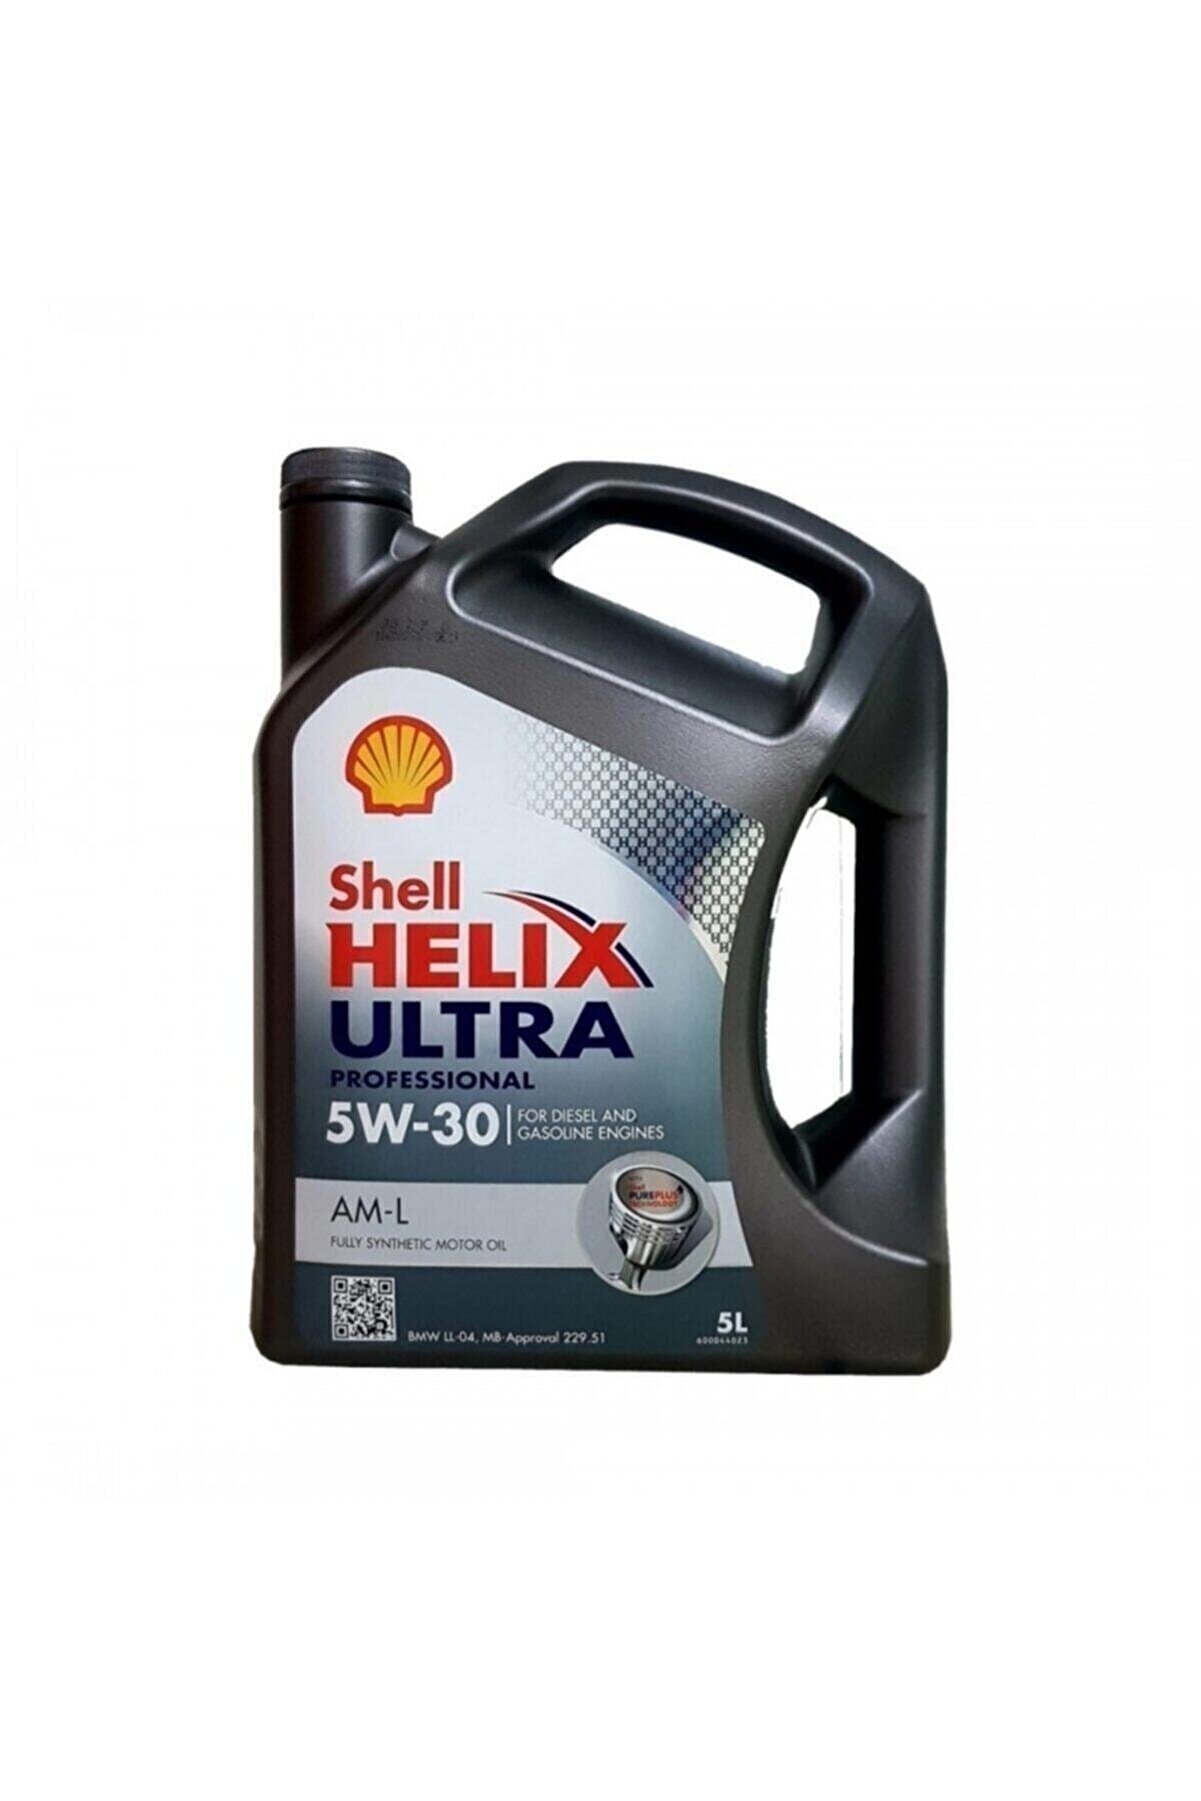 Shell Helix Ultra Pro Am-l 5w-30 Motor Yağı 5 Litre (MERCEDES BMW YETKİLİ SERVİS YAĞI)